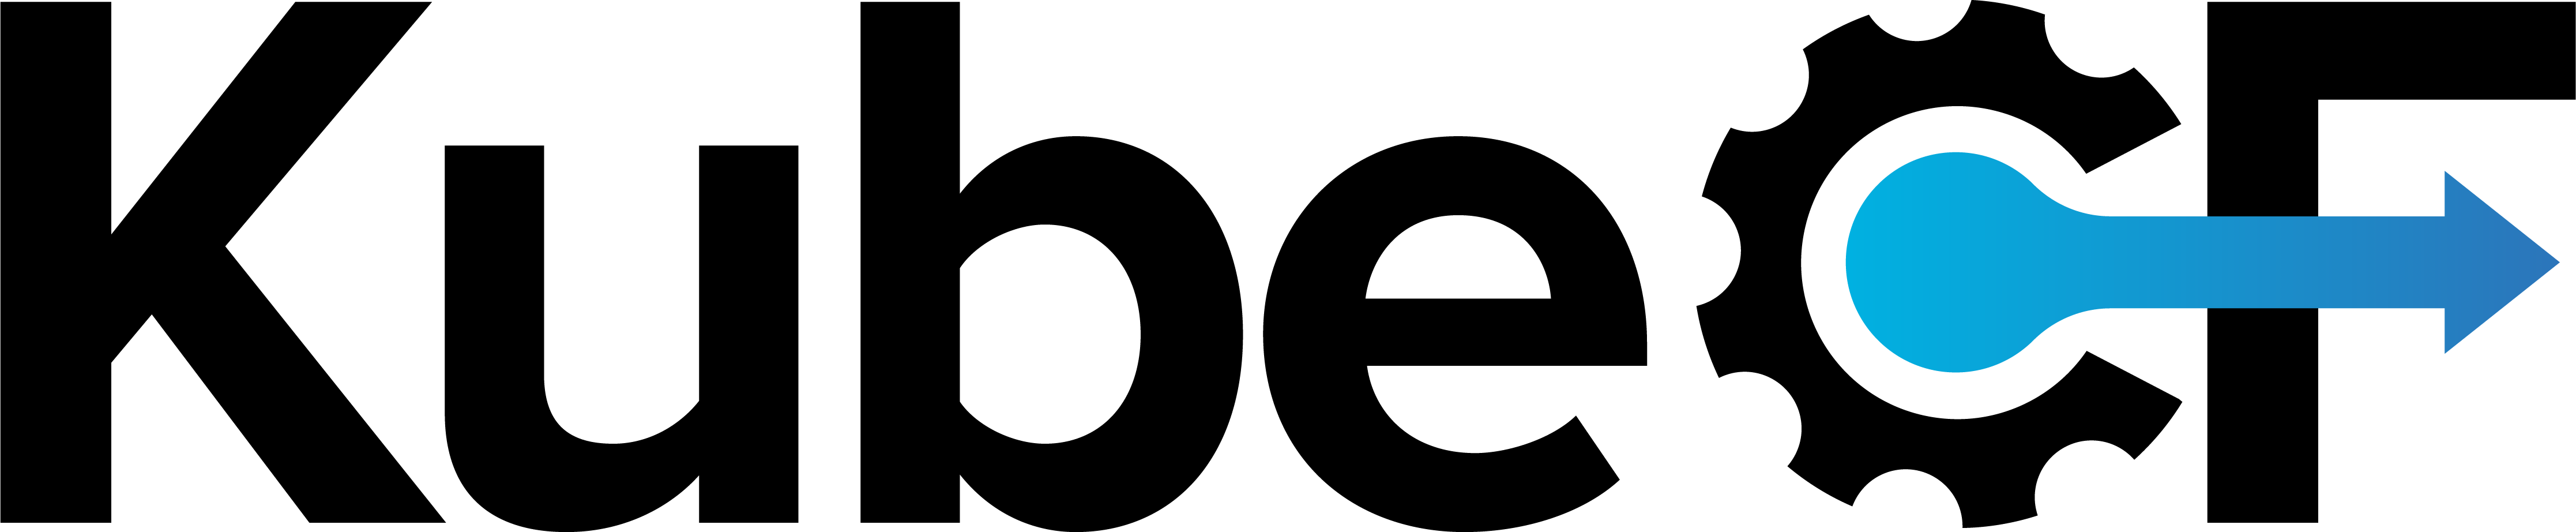 Kubecf_logo